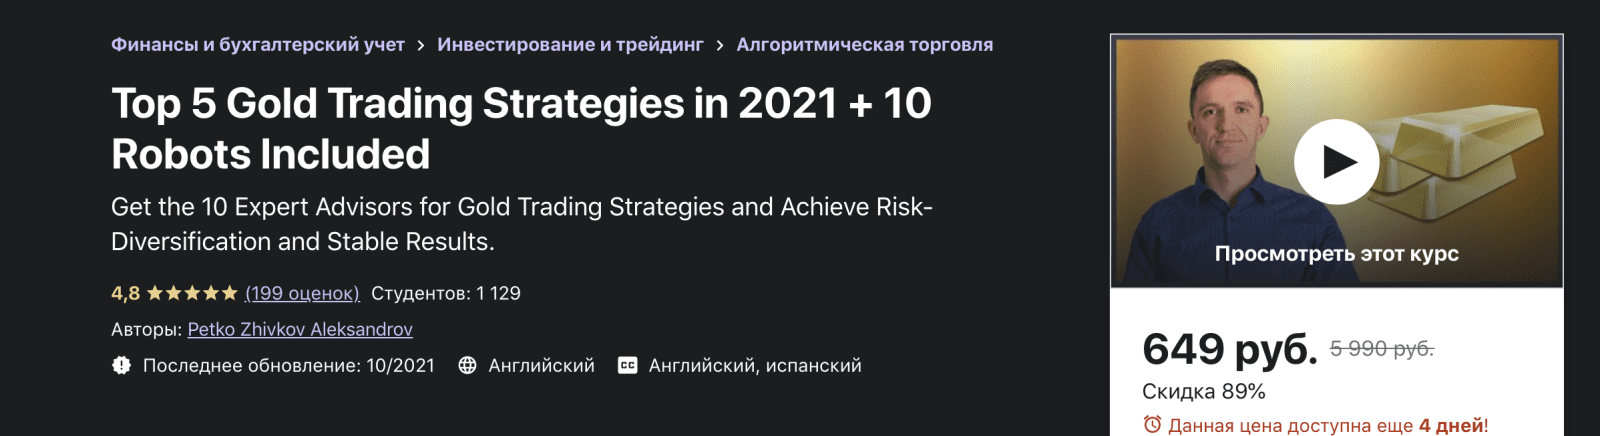 Изображение [Udemy] Petko Zhivkov Aleksandrov - 5 лучших золотых стратегий торговли в 2021 году + 10 роботов (2021) в посте 244792